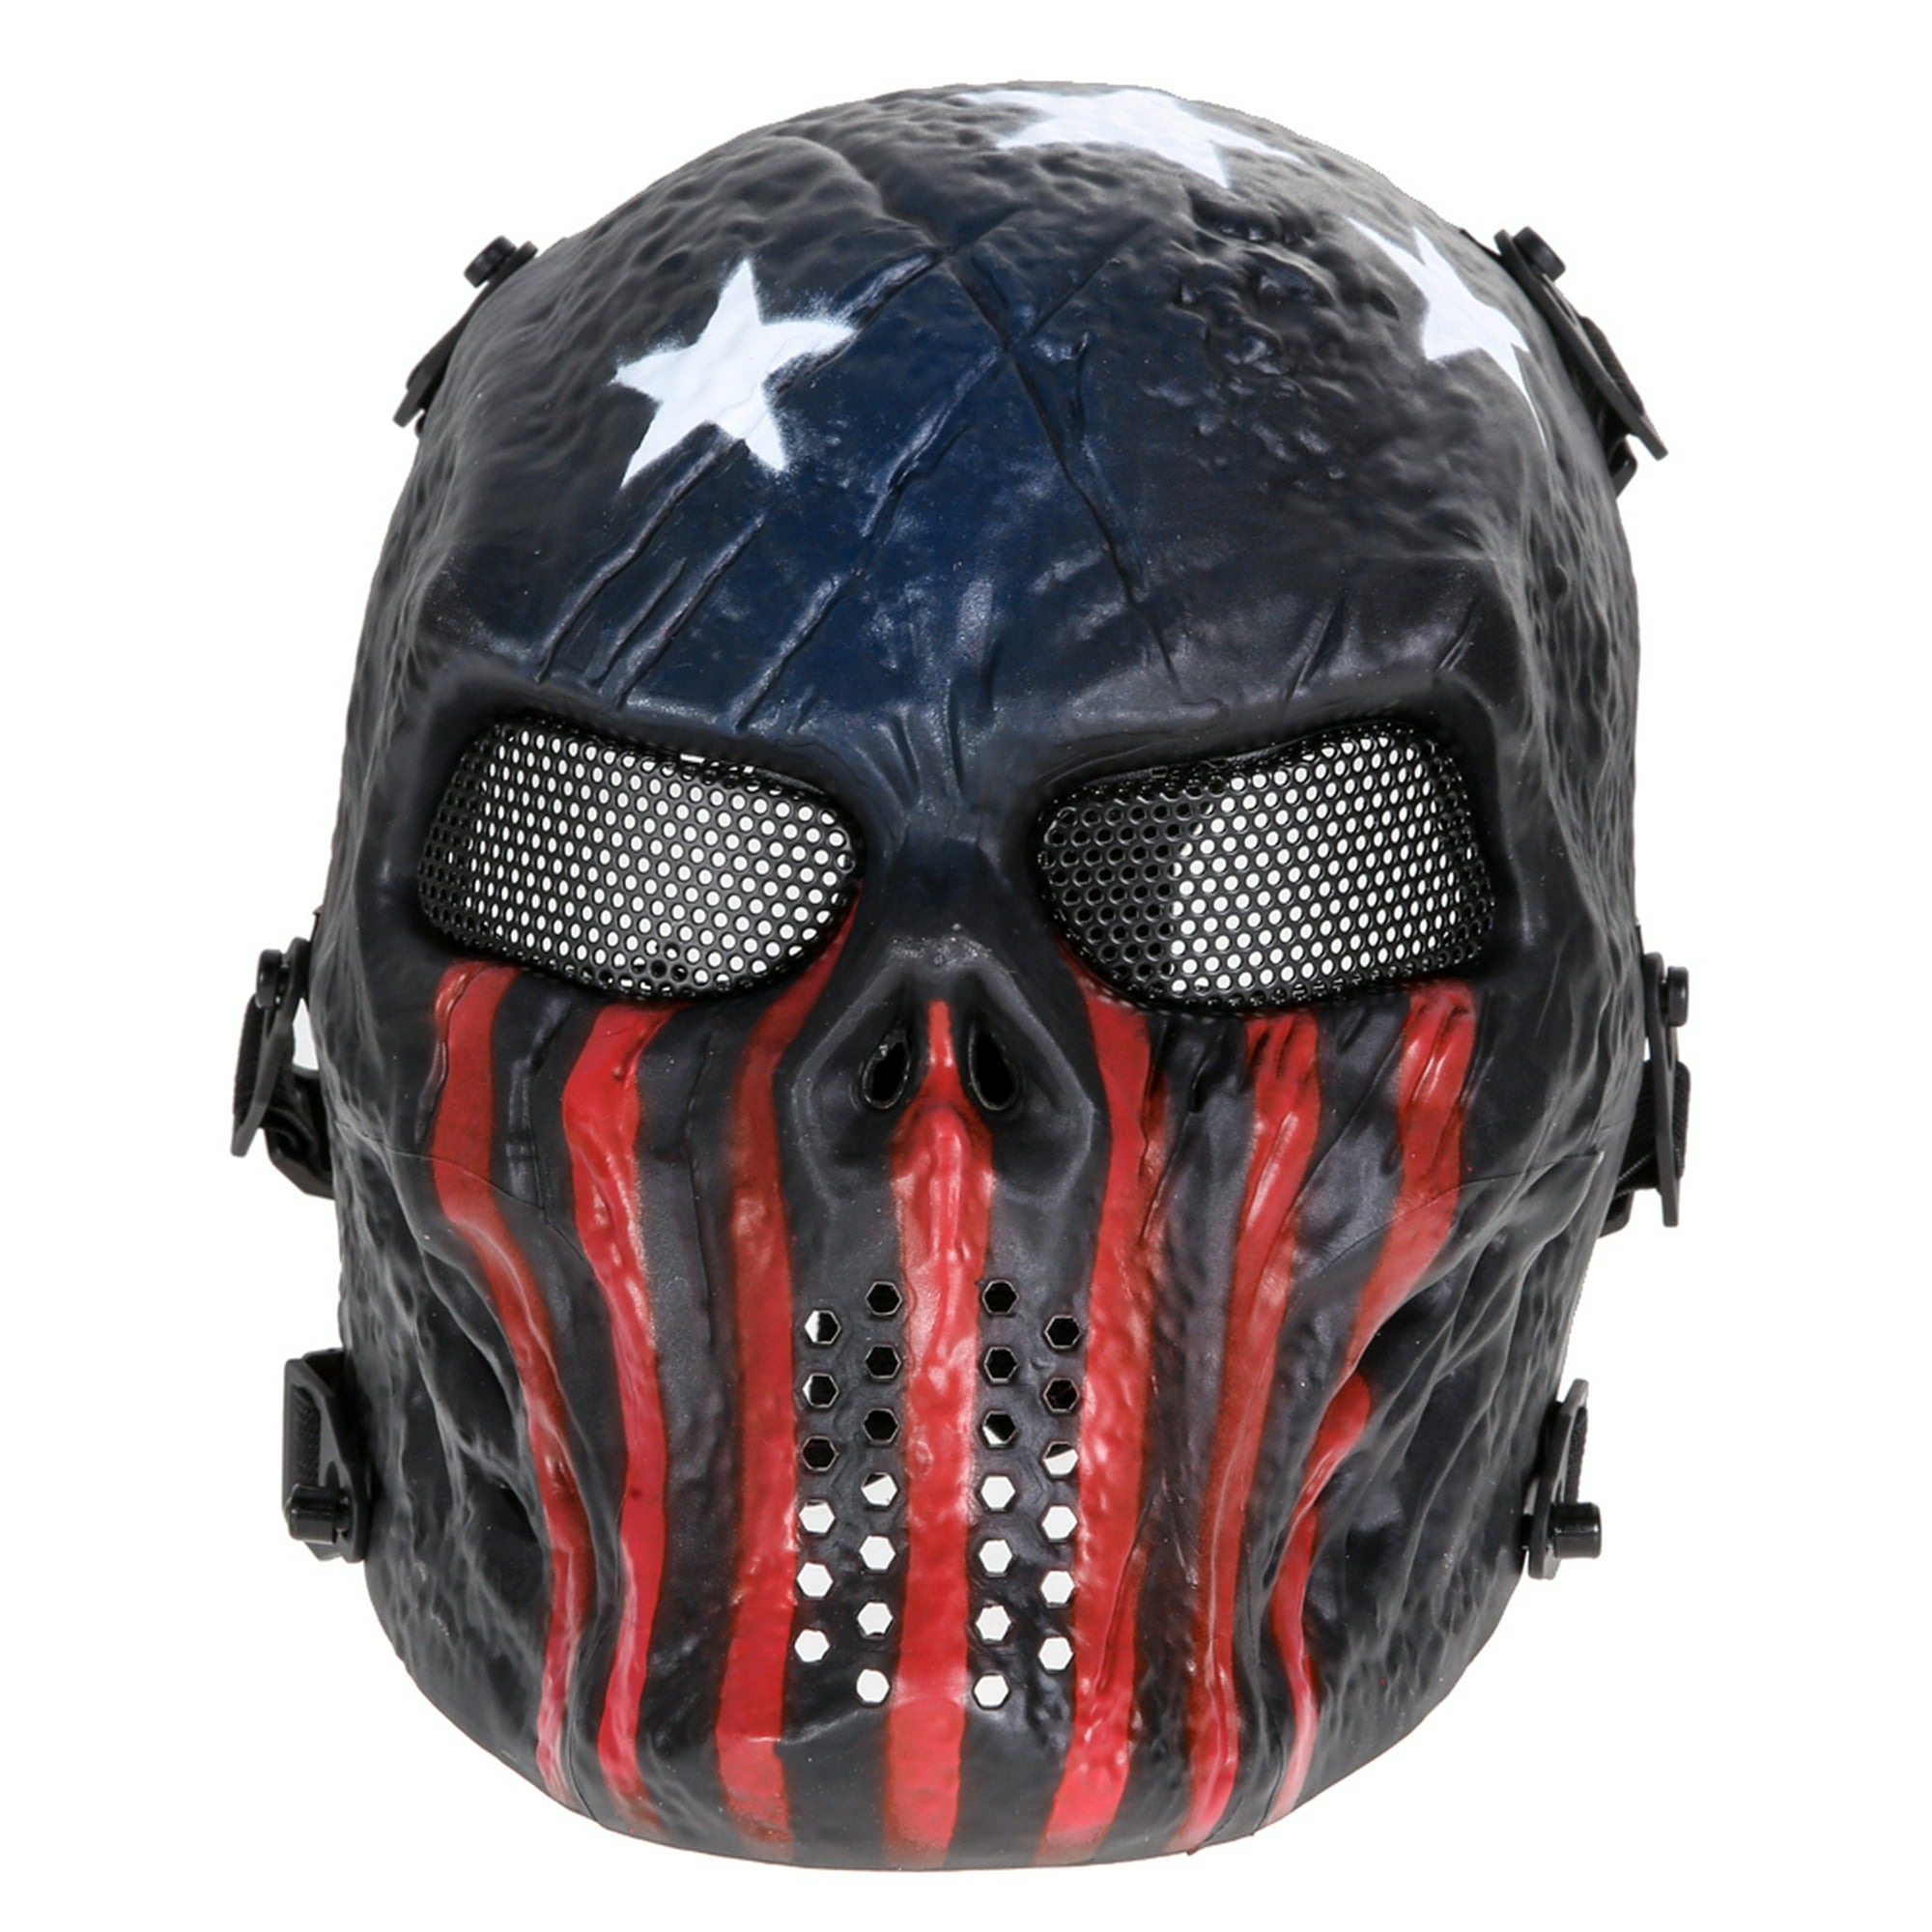 Máscara de calavera Airsoft Paintball Tactical Full Face Protection Army  (Capitán) JShteea Para Estrenar